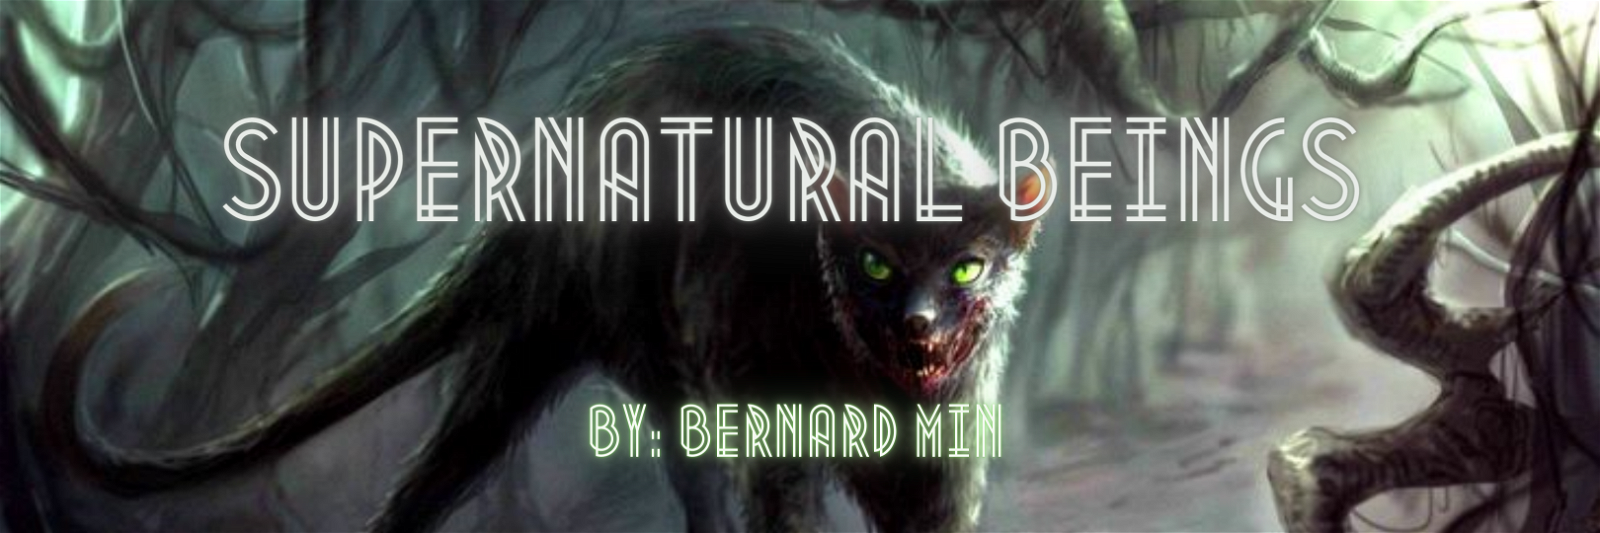 Supernatural Beings by Bernard #9